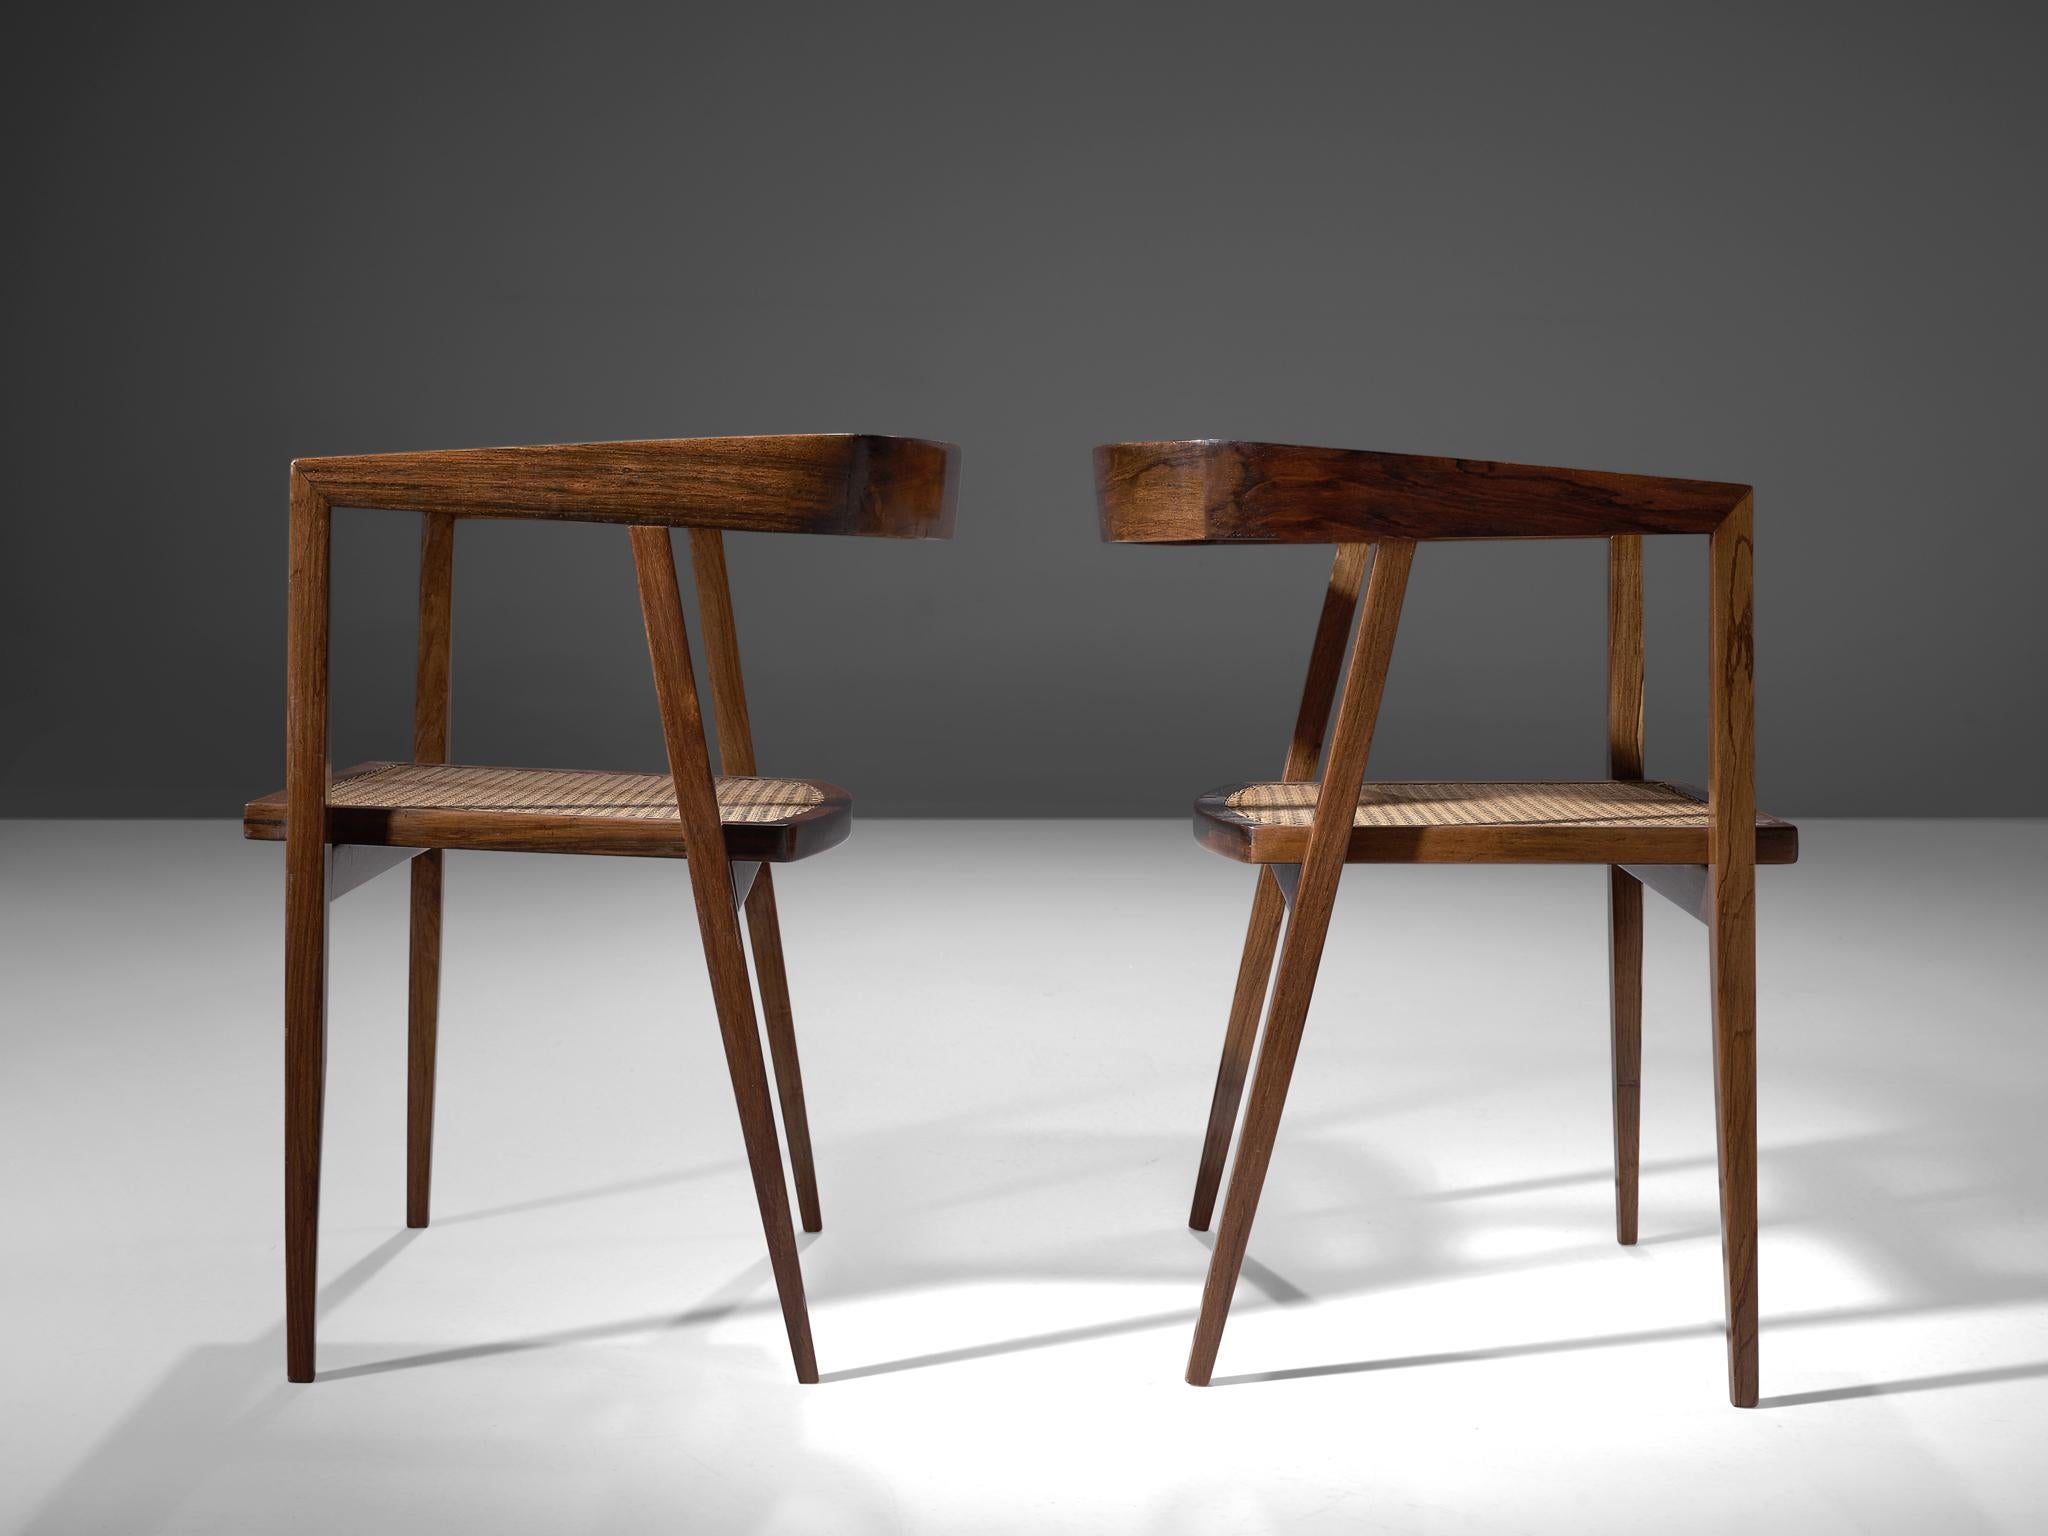 Joaquim Tenreiro, Paar Sessel, Palisander, Schilfrohr, Brasilien, um 1960.

Ein außergewöhnliches Paar Beistellstühle, entworfen von dem brasilianischen Meisterdesigner und Holzarbeiter Joaquim Tenreiro. Die Esszimmerstühle zeichnen sich durch